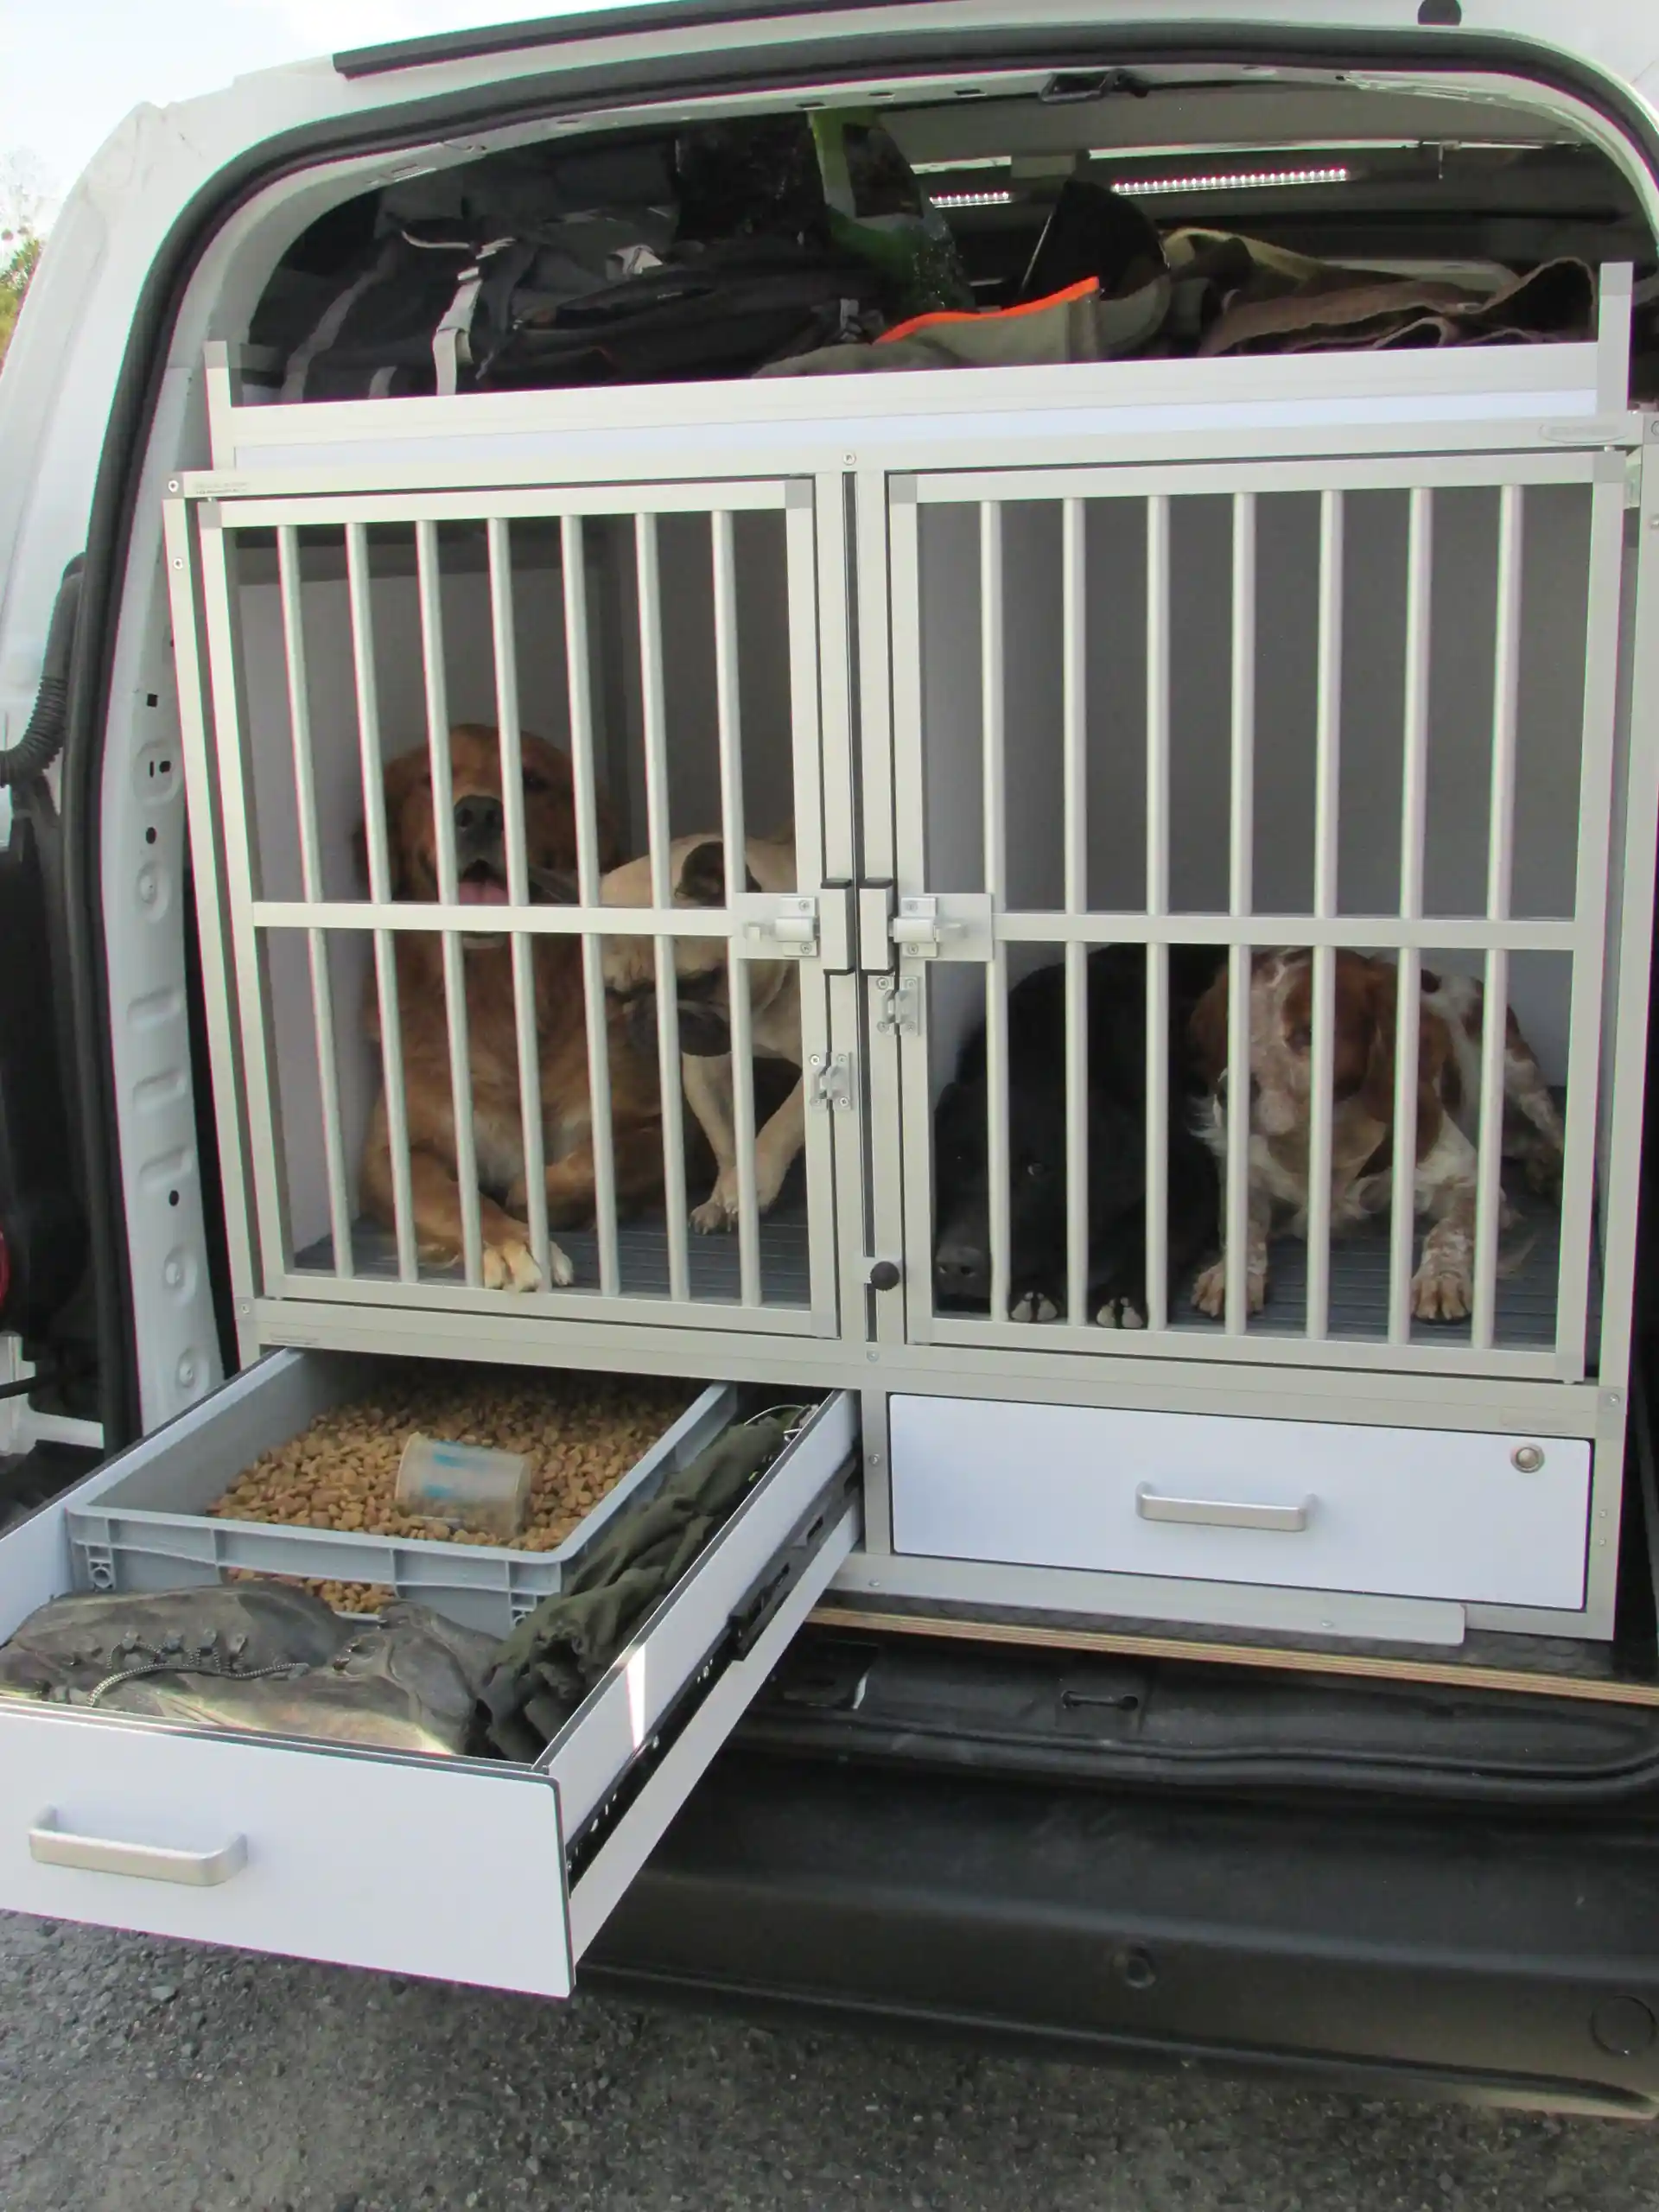 Cage transport pour chiens Bizeaux courts pour coffre voiture Braveur